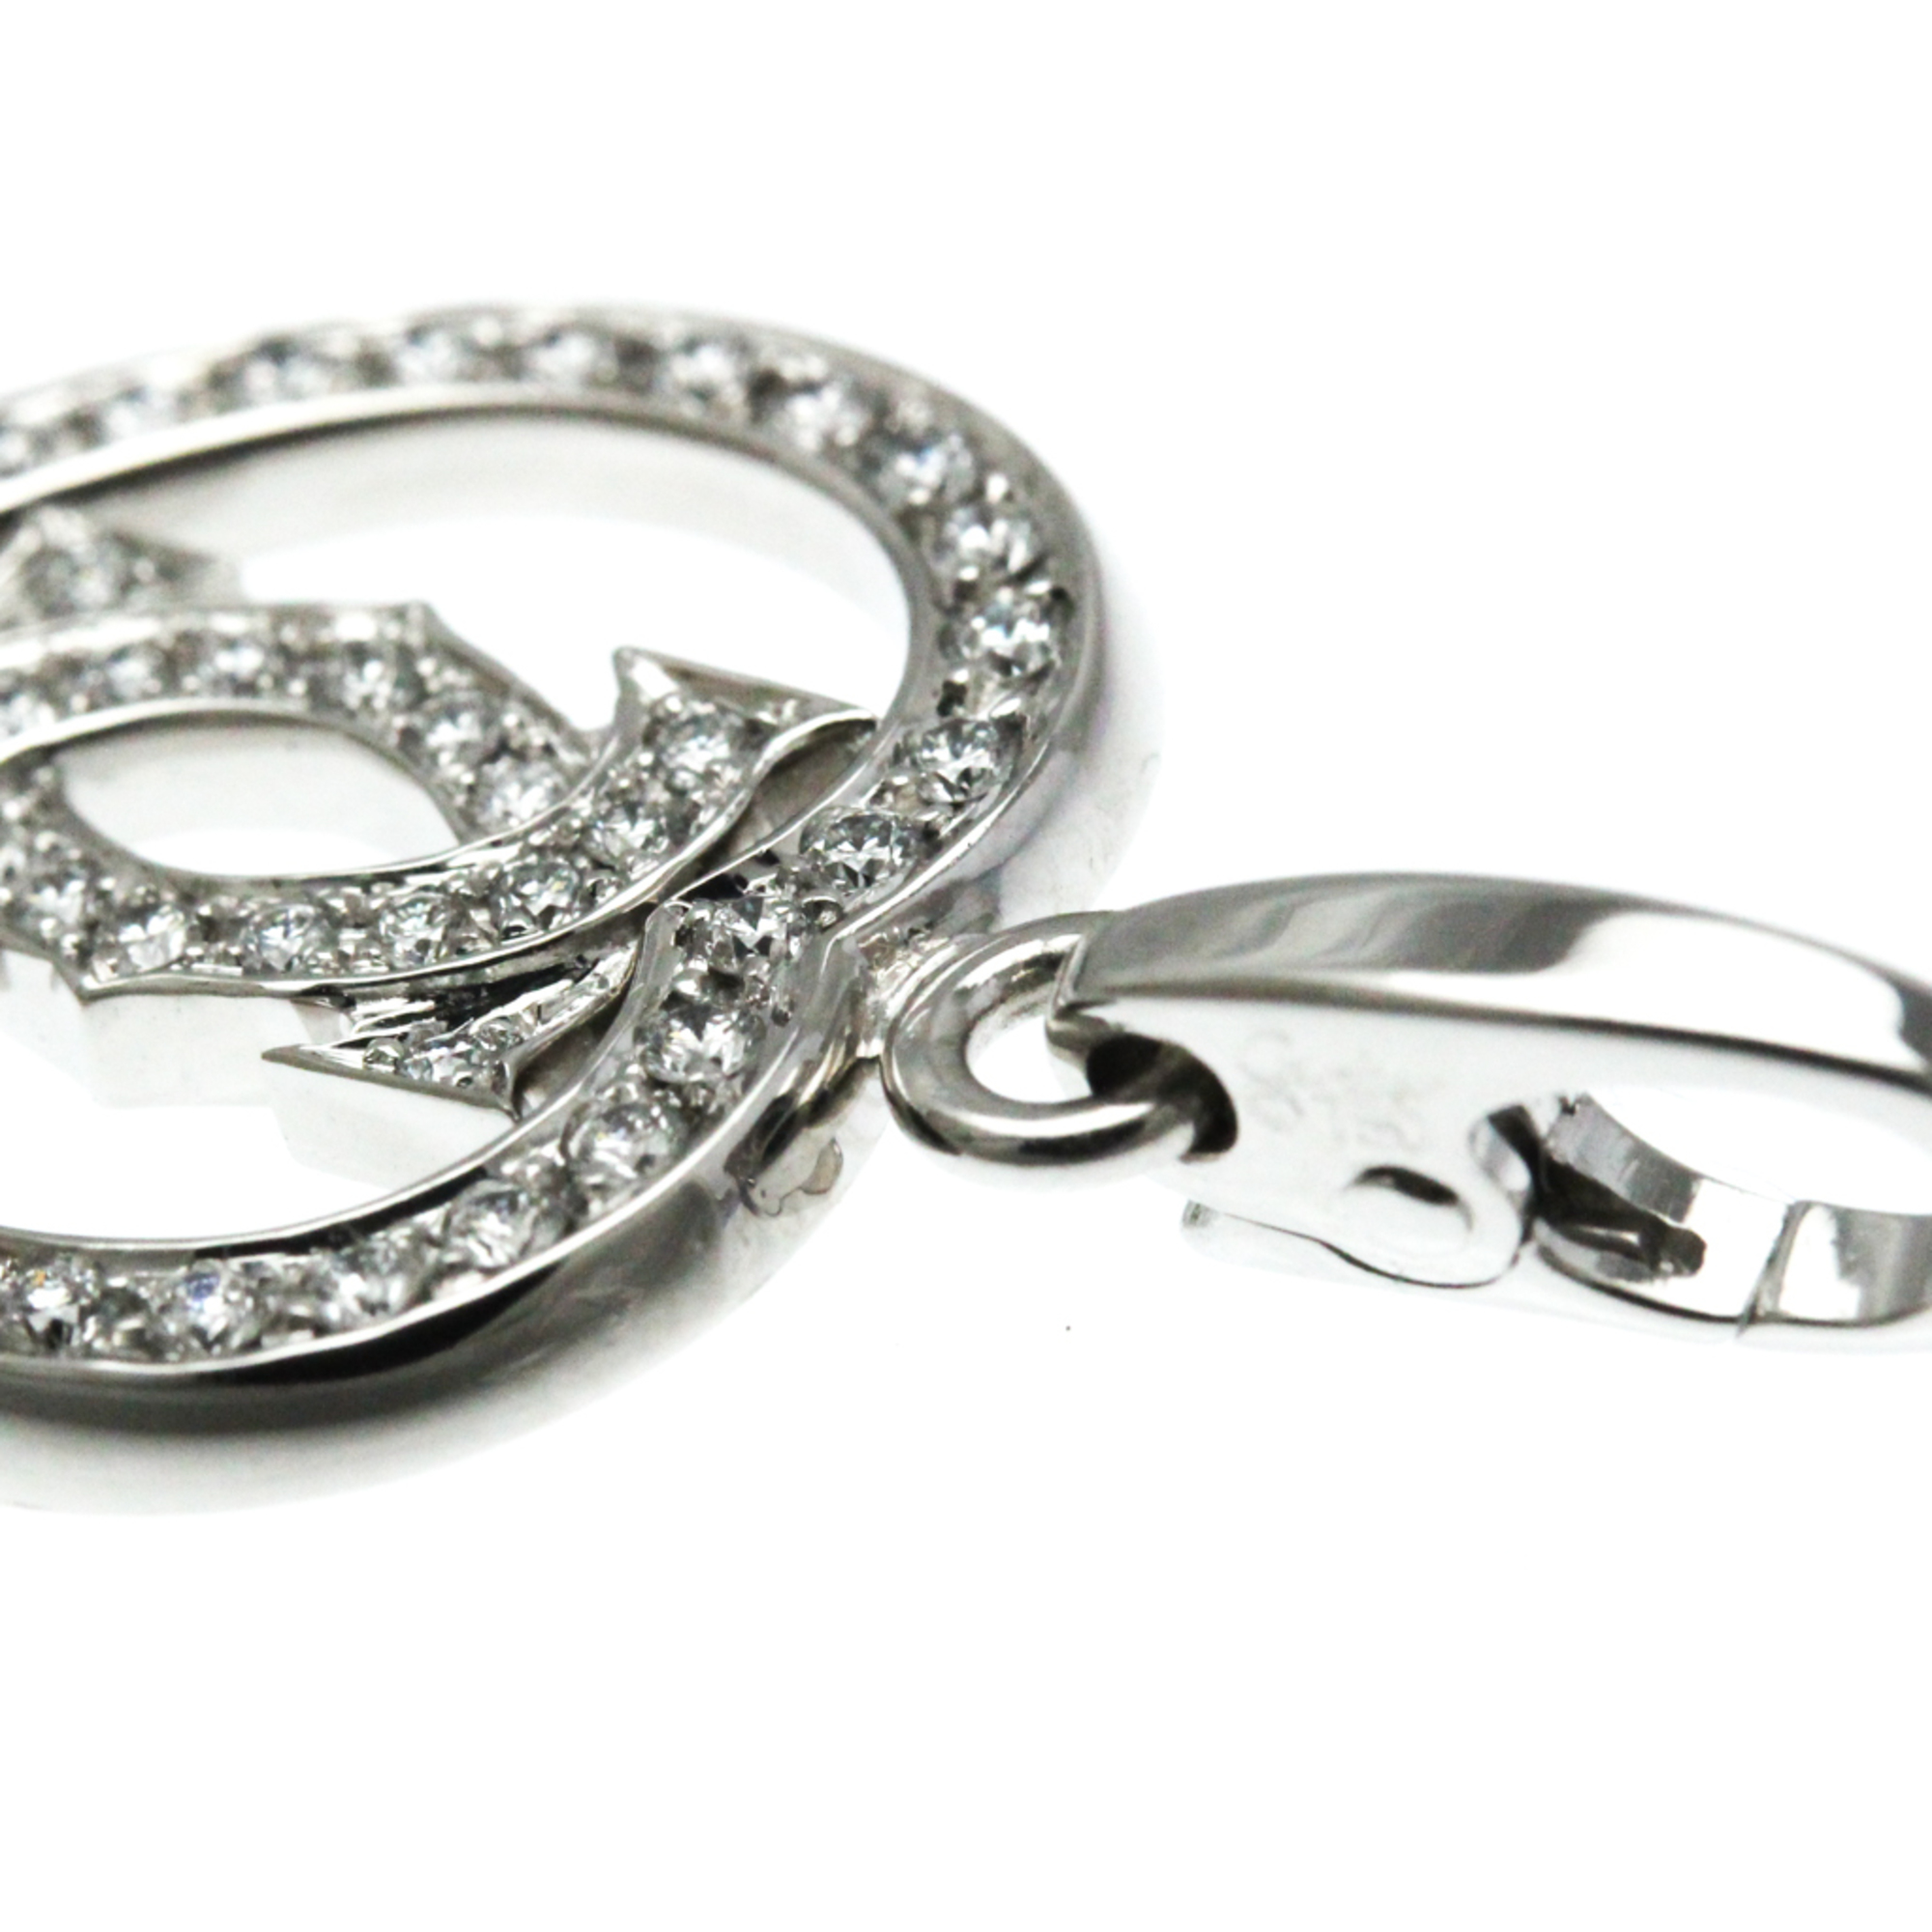 Cartier C De Cartier 2C Heart Charm White Gold (18K) Diamond Women's Fashion Pendant Necklace (Silver)